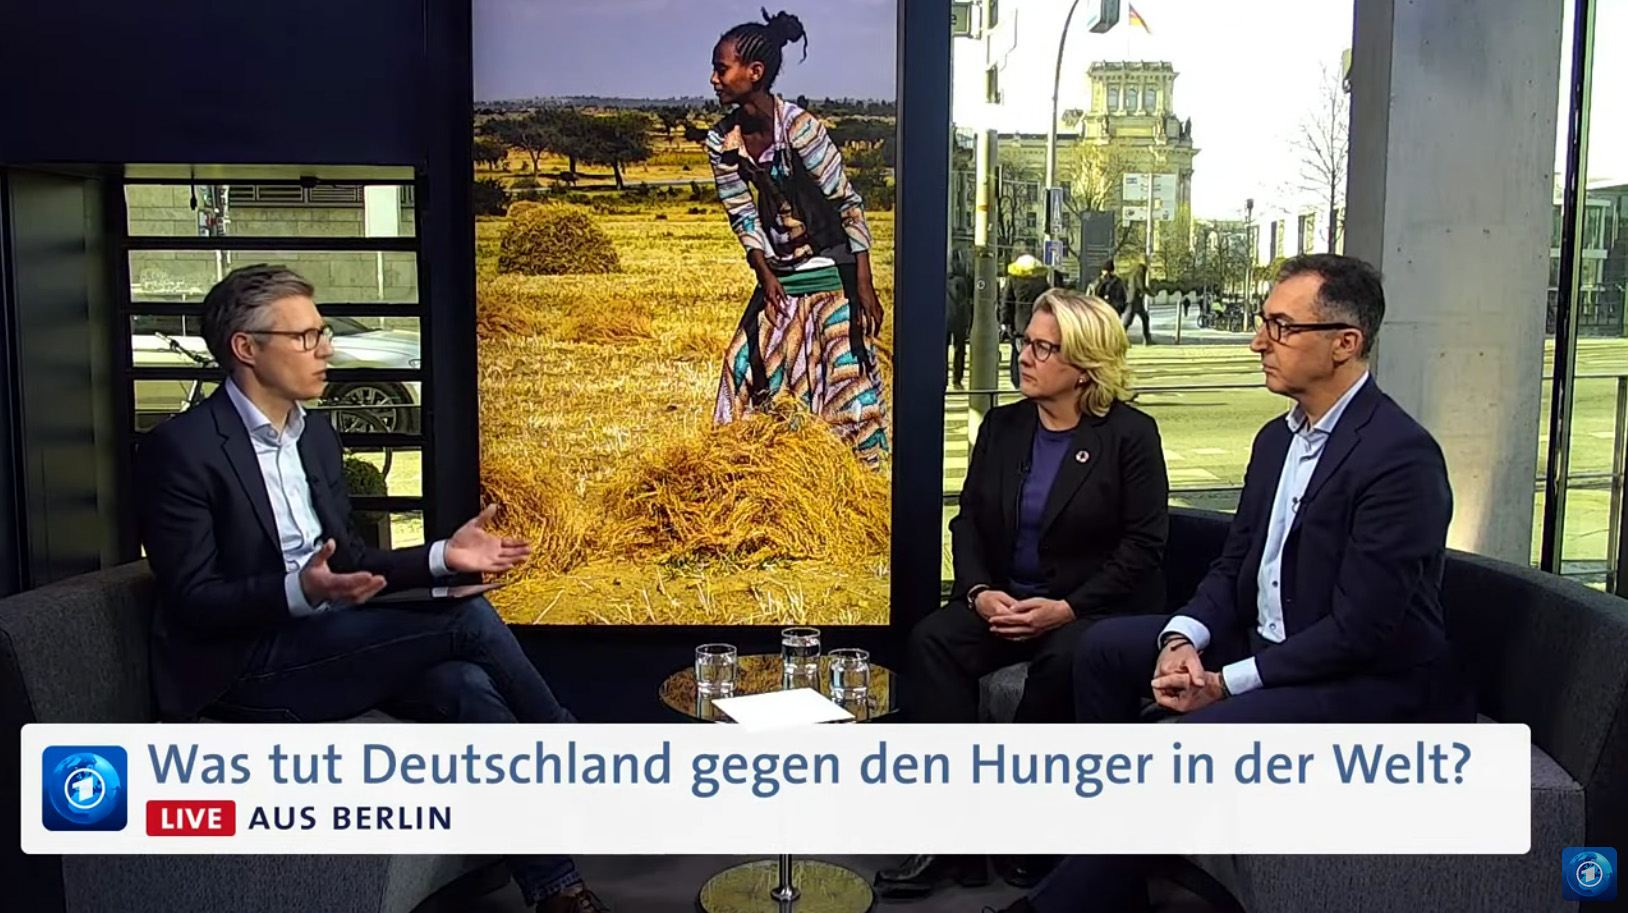 Standbild aus dem Live-Chat "Was tut Deutschland gegen den Hunger in der Welt? | Fragen an Schulze und Özdemir"